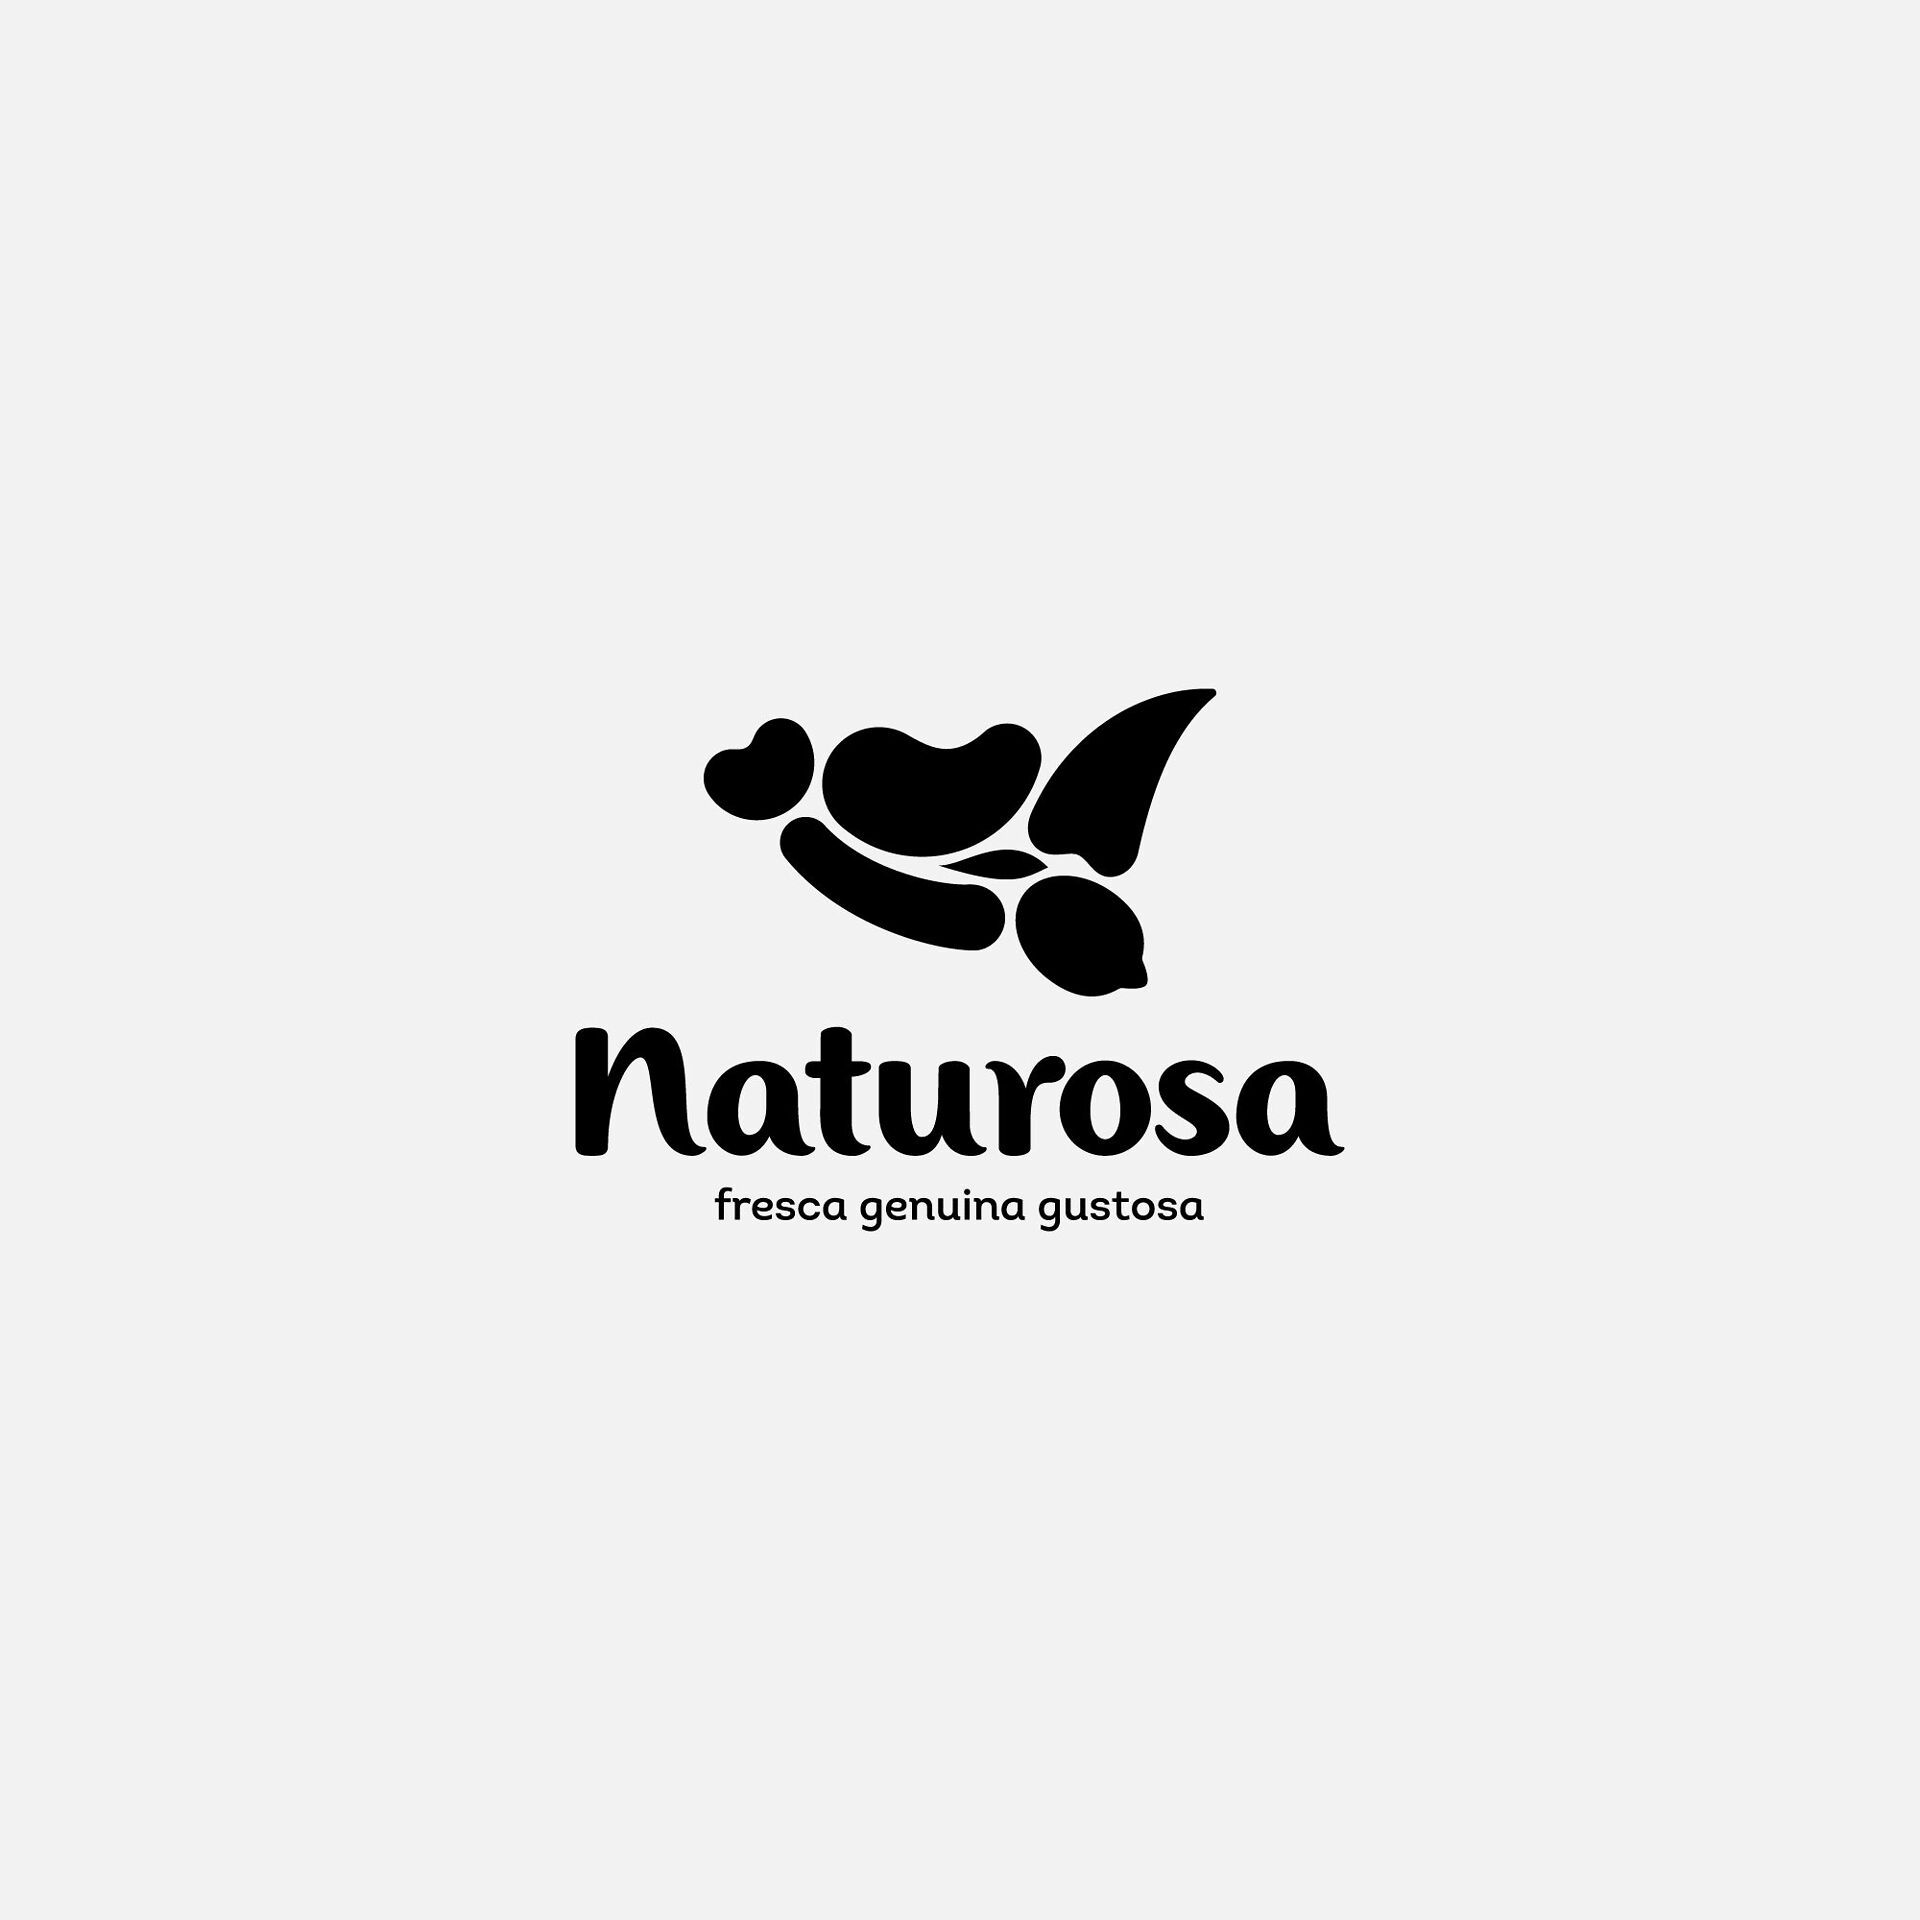 Logo Naturosa in nero